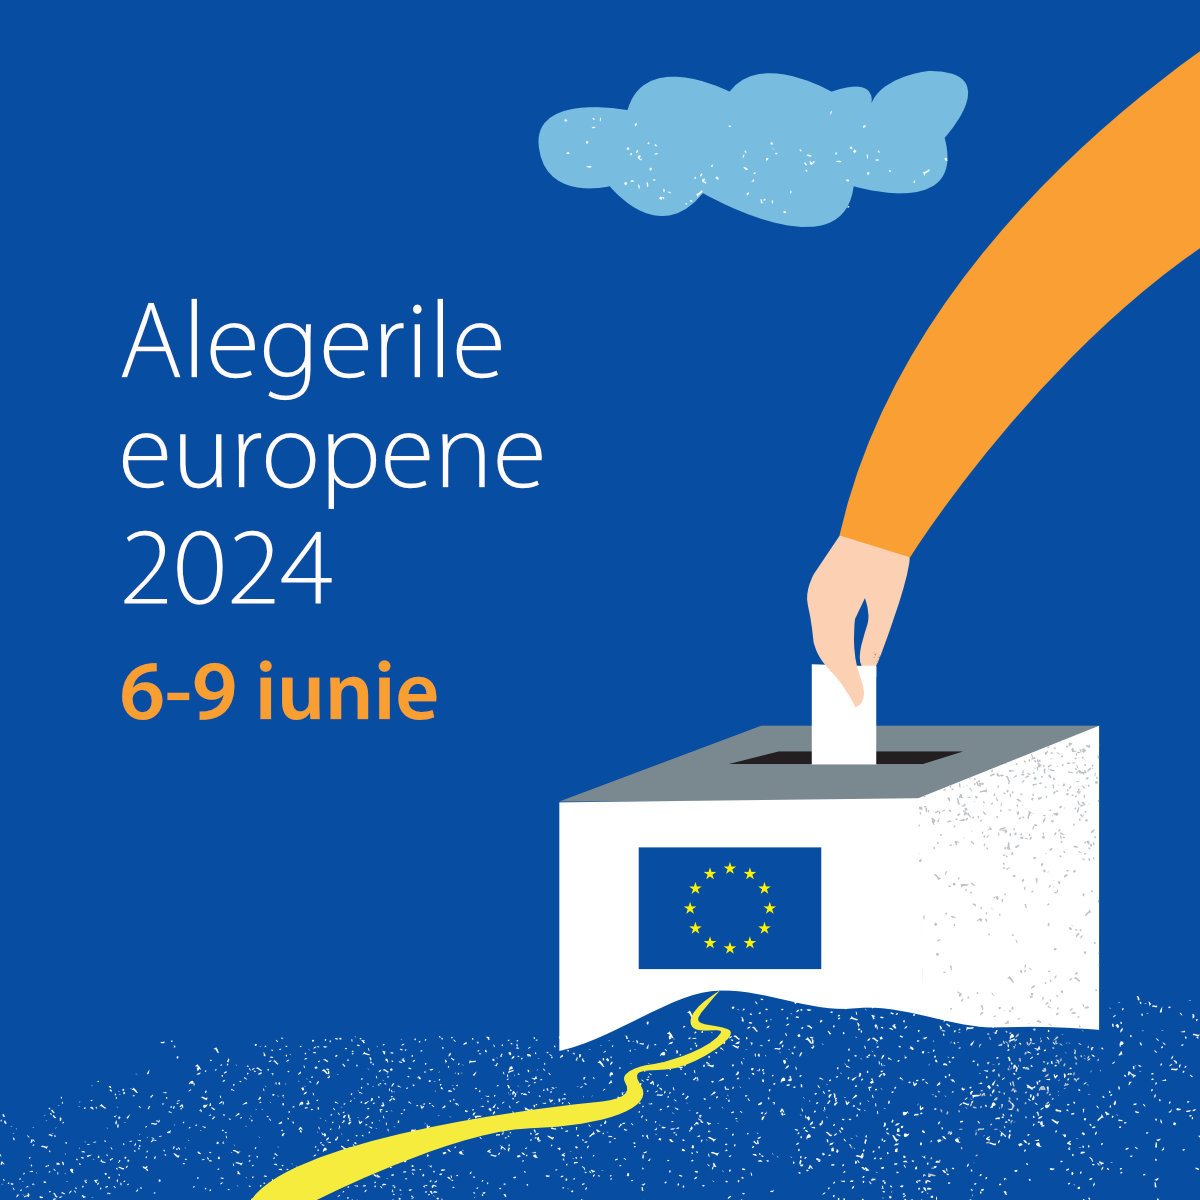 Alegerile europene 2024 - Square